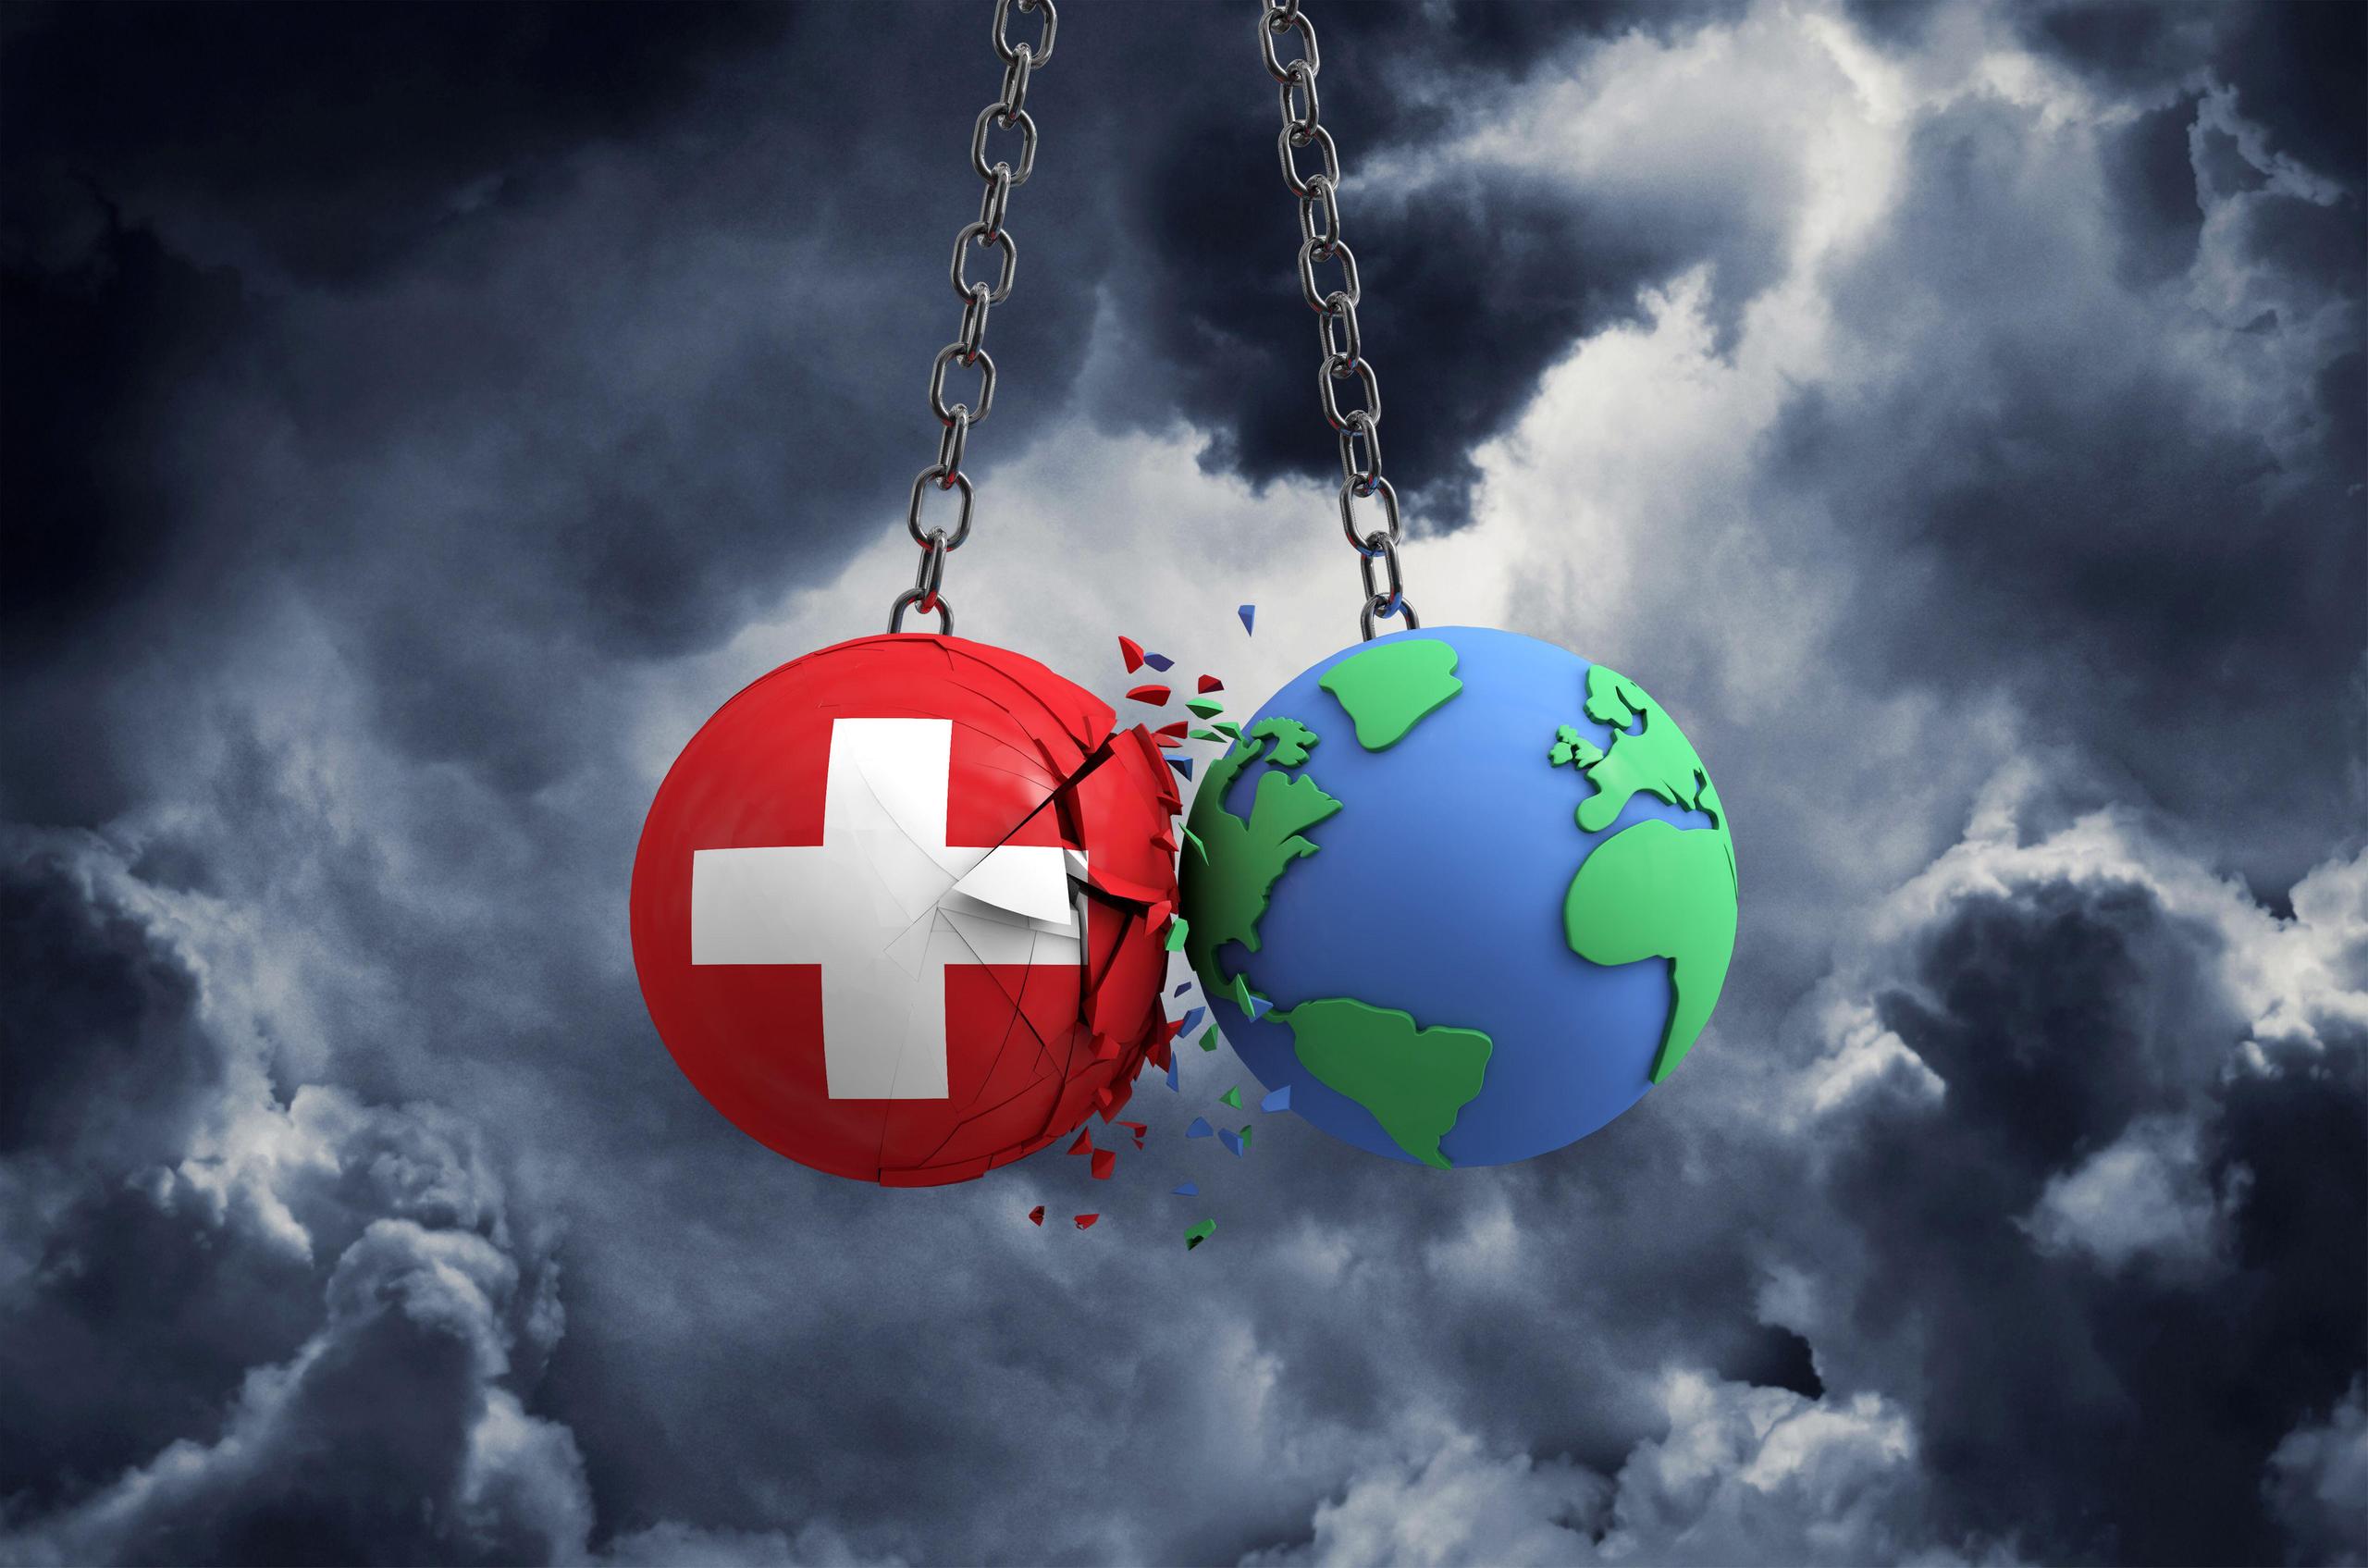 due sfere attaccate a una catena: una con i colori della svizzera, l altra rappresenta il pianeta terra